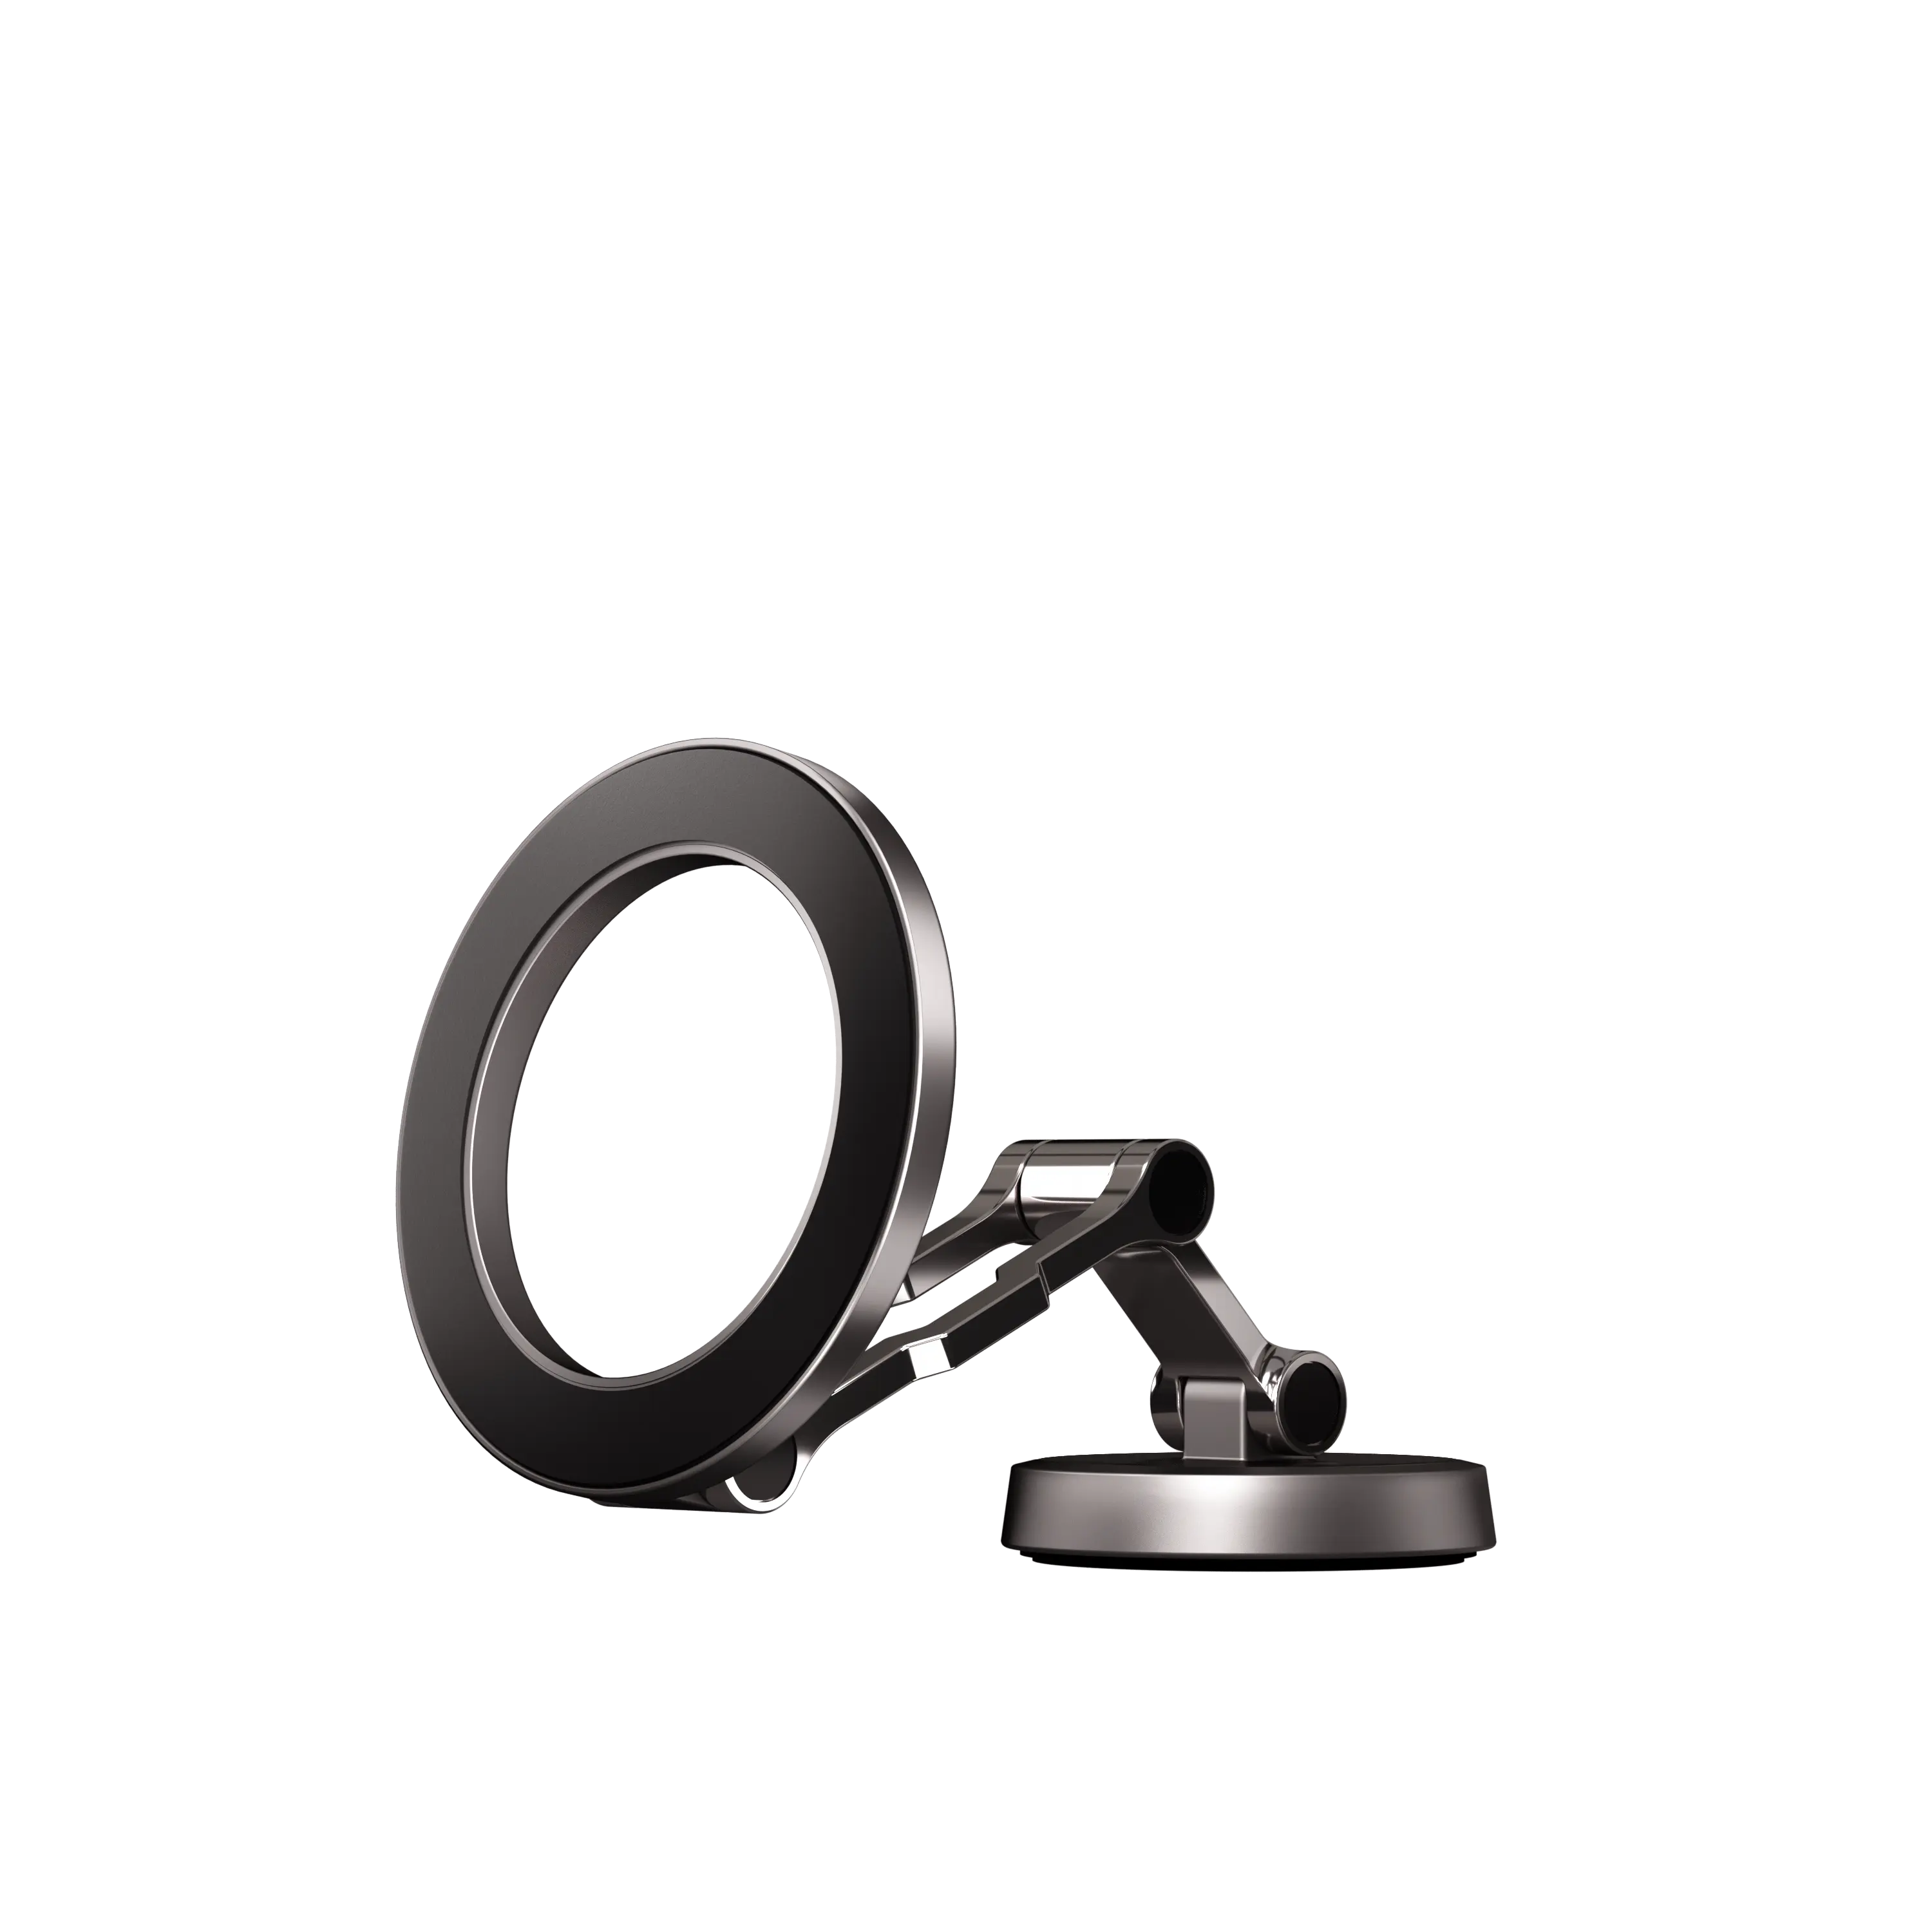 Yeni tasarım özel Logo 360 derece rotasyon manyetik telefon dağı araba Dashboard çift mıknatıslar araba telefon tutucu siyah Guangdong